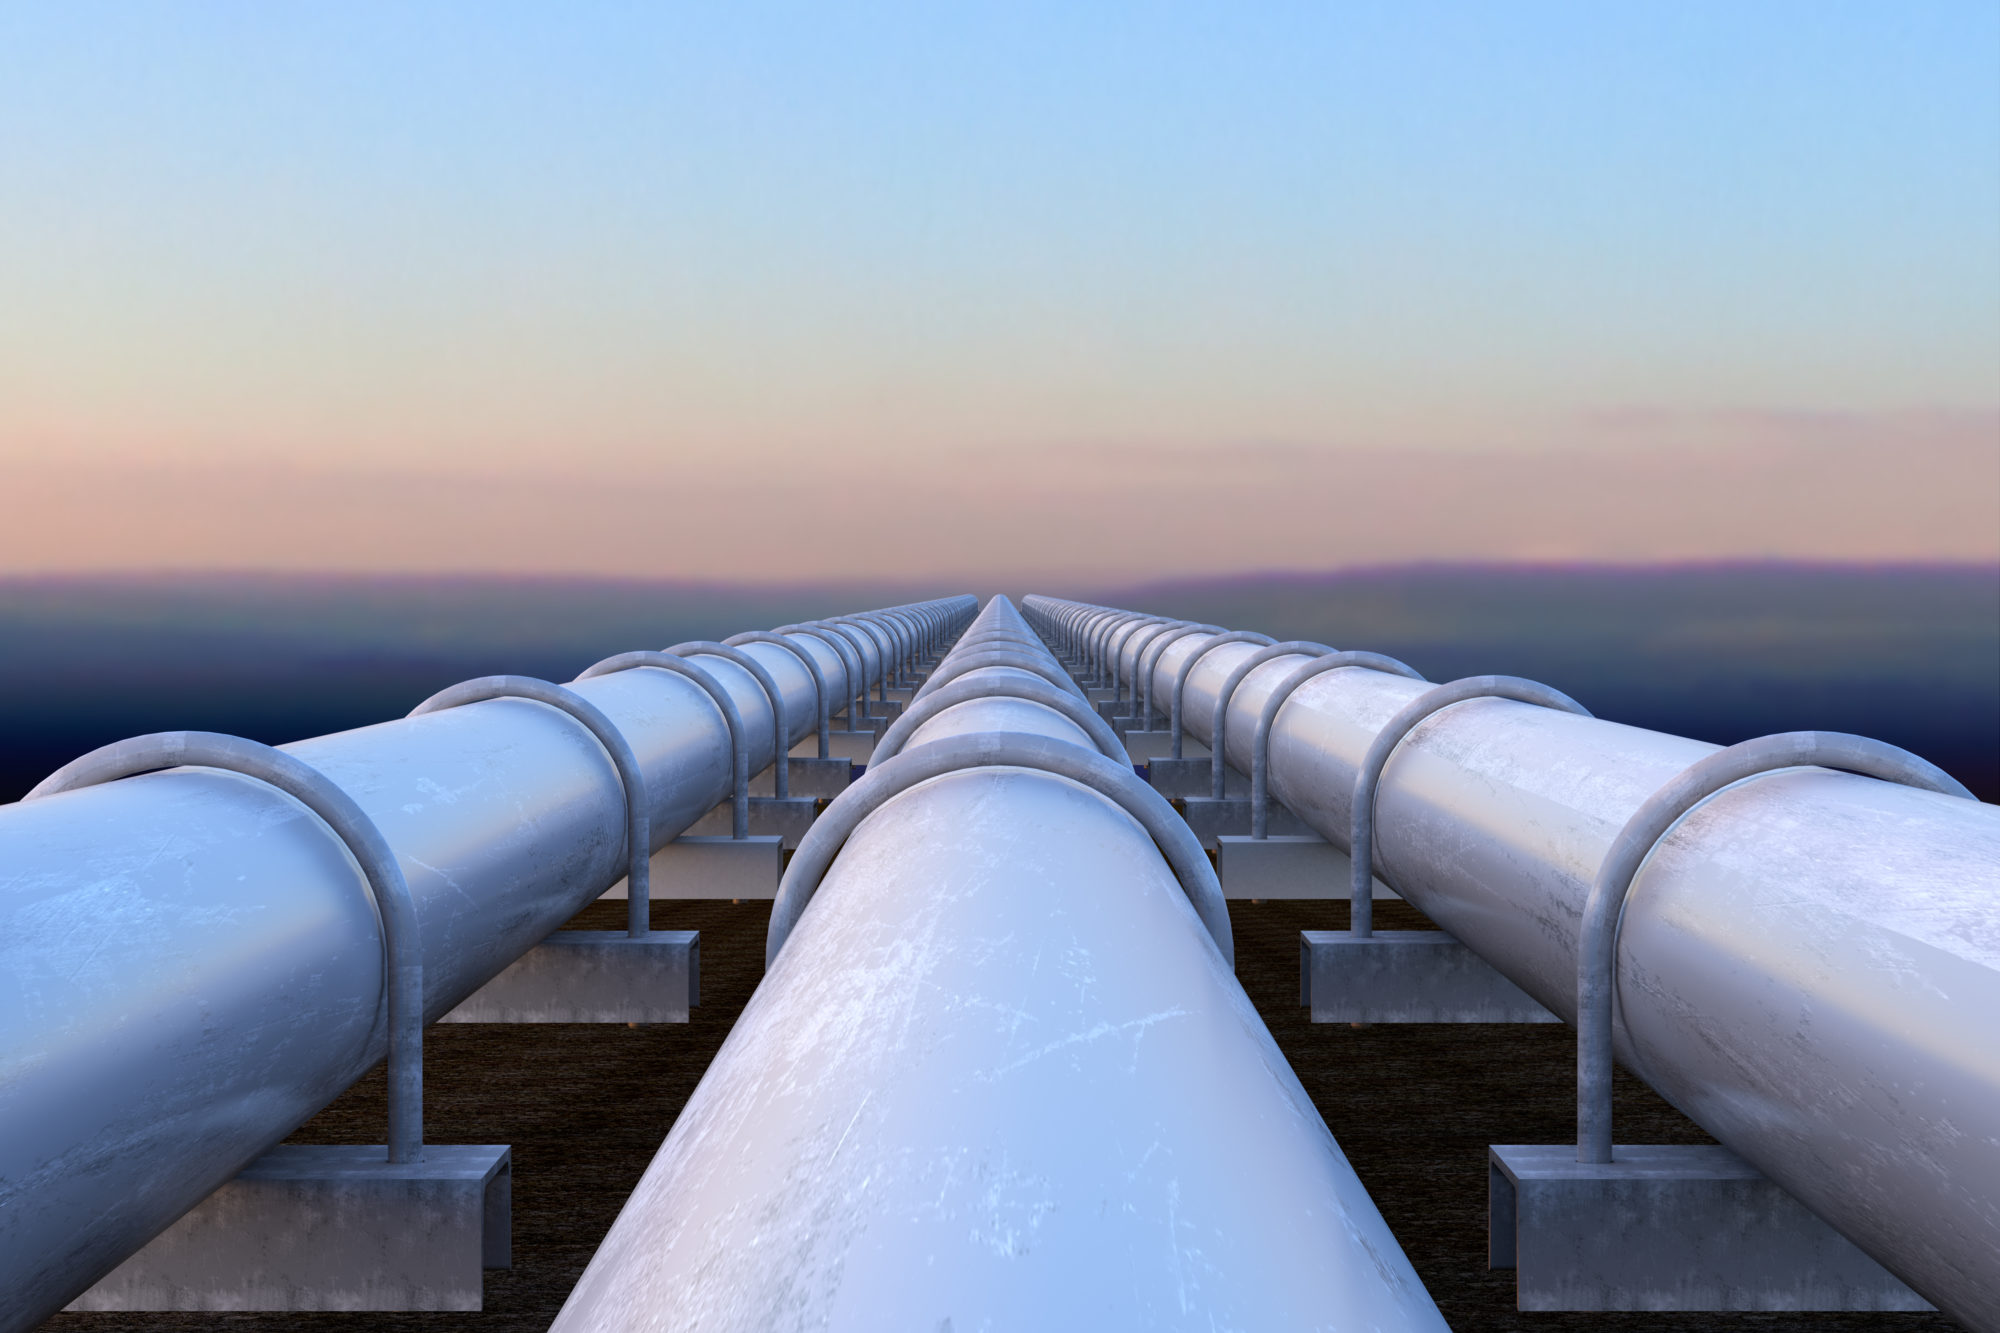 Three pipelines